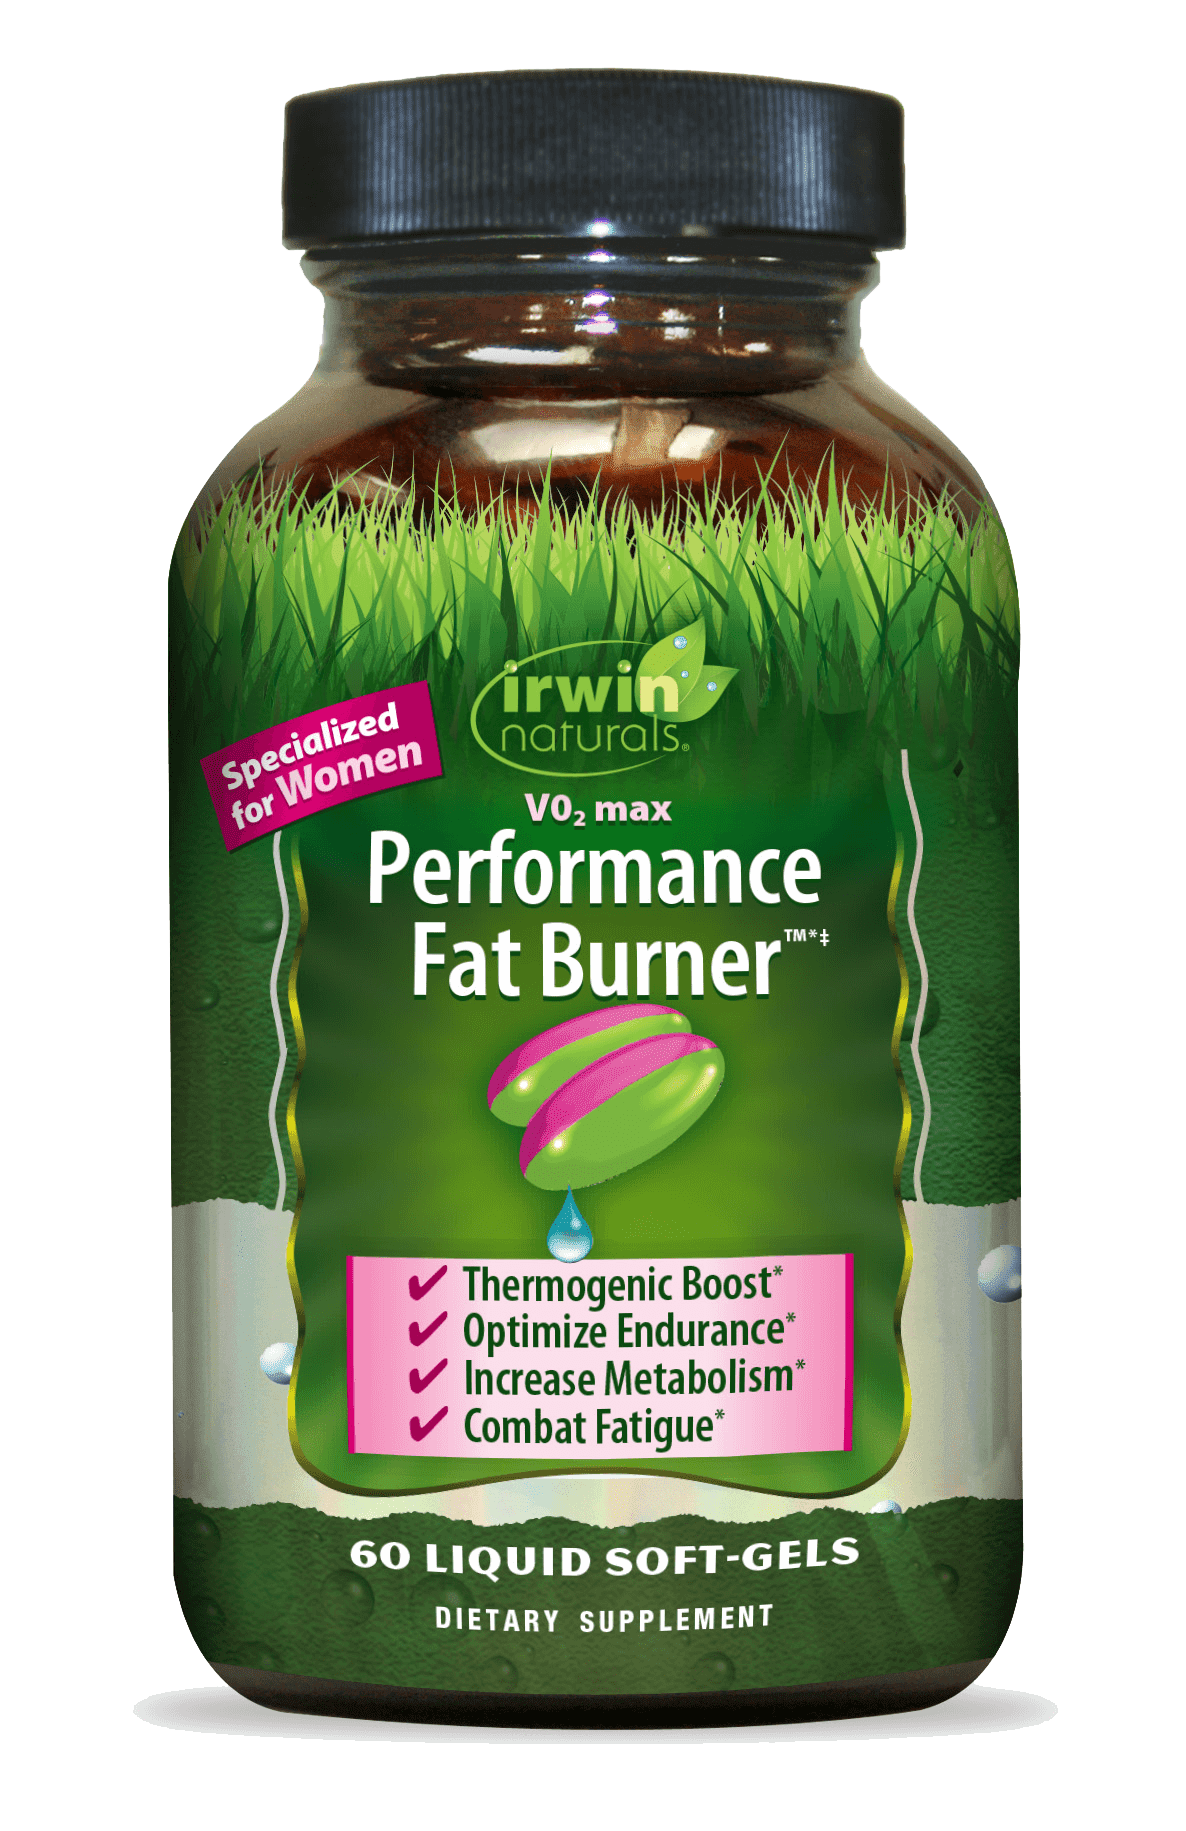 Irwin Naturals V02 Max, Performance Fat Burner, 60 Liquid Soft-Gels